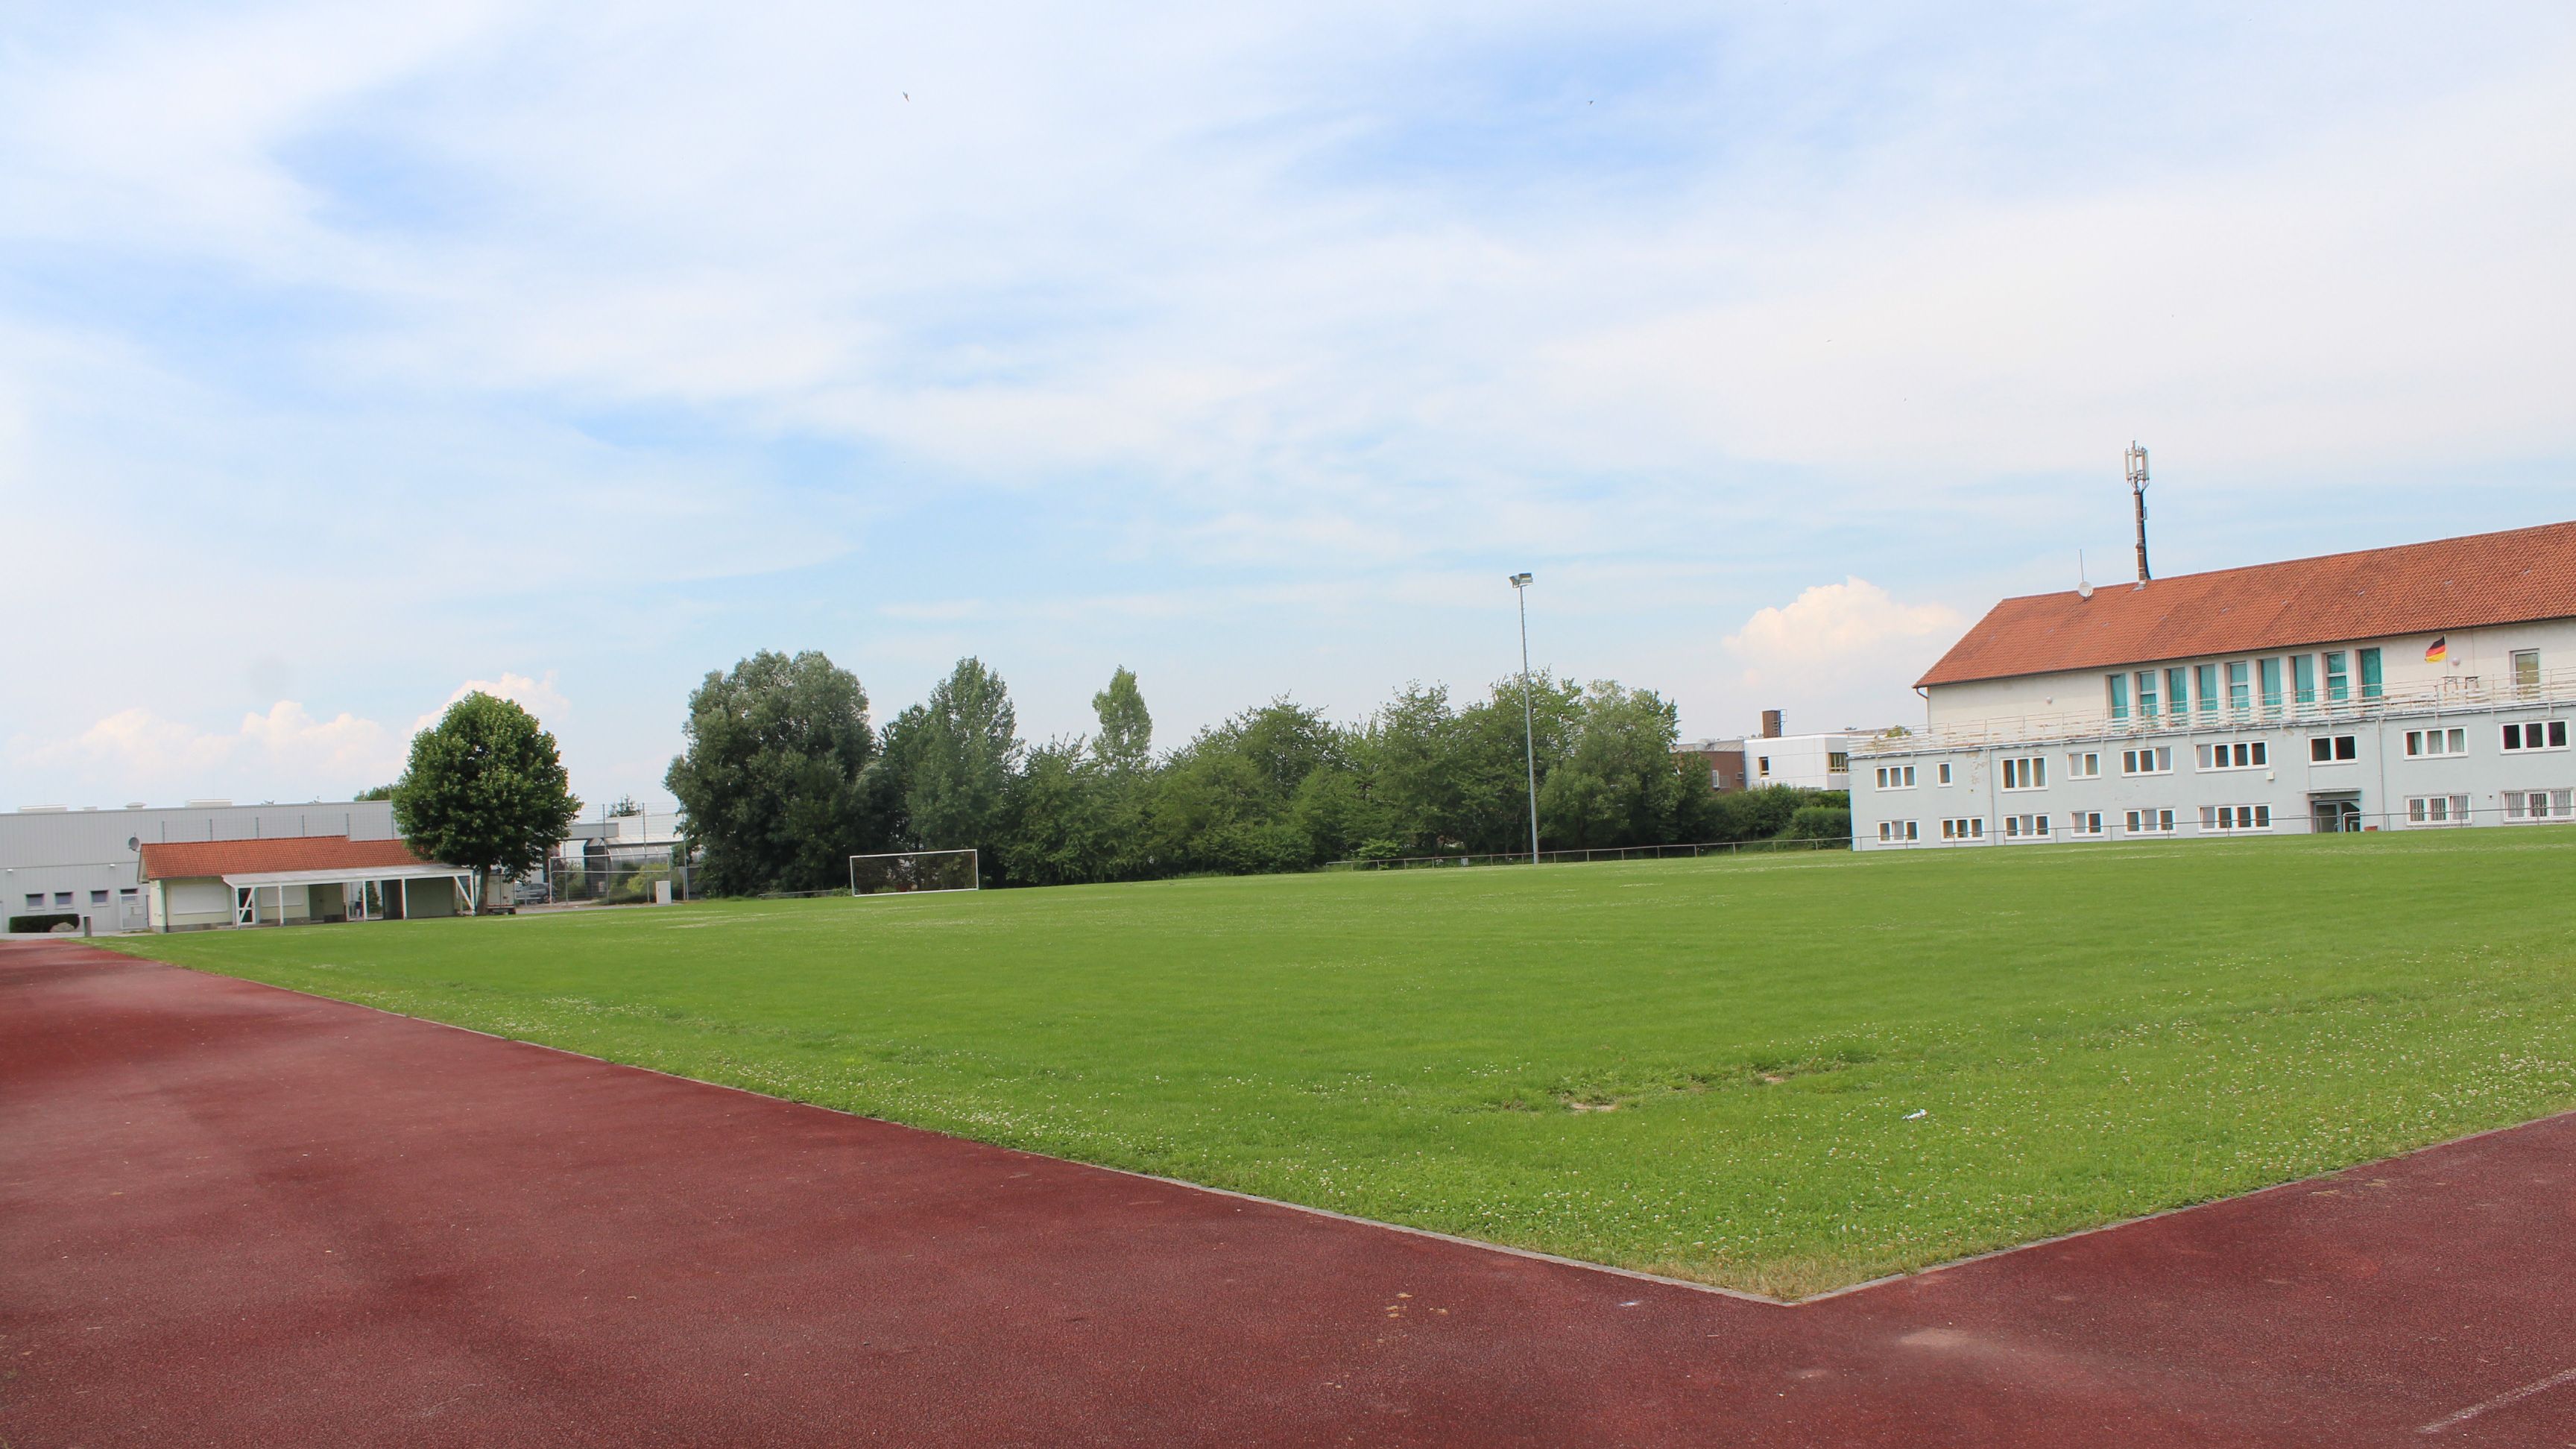                                                     Sportplatz Erich-Fritz-Halle                                    